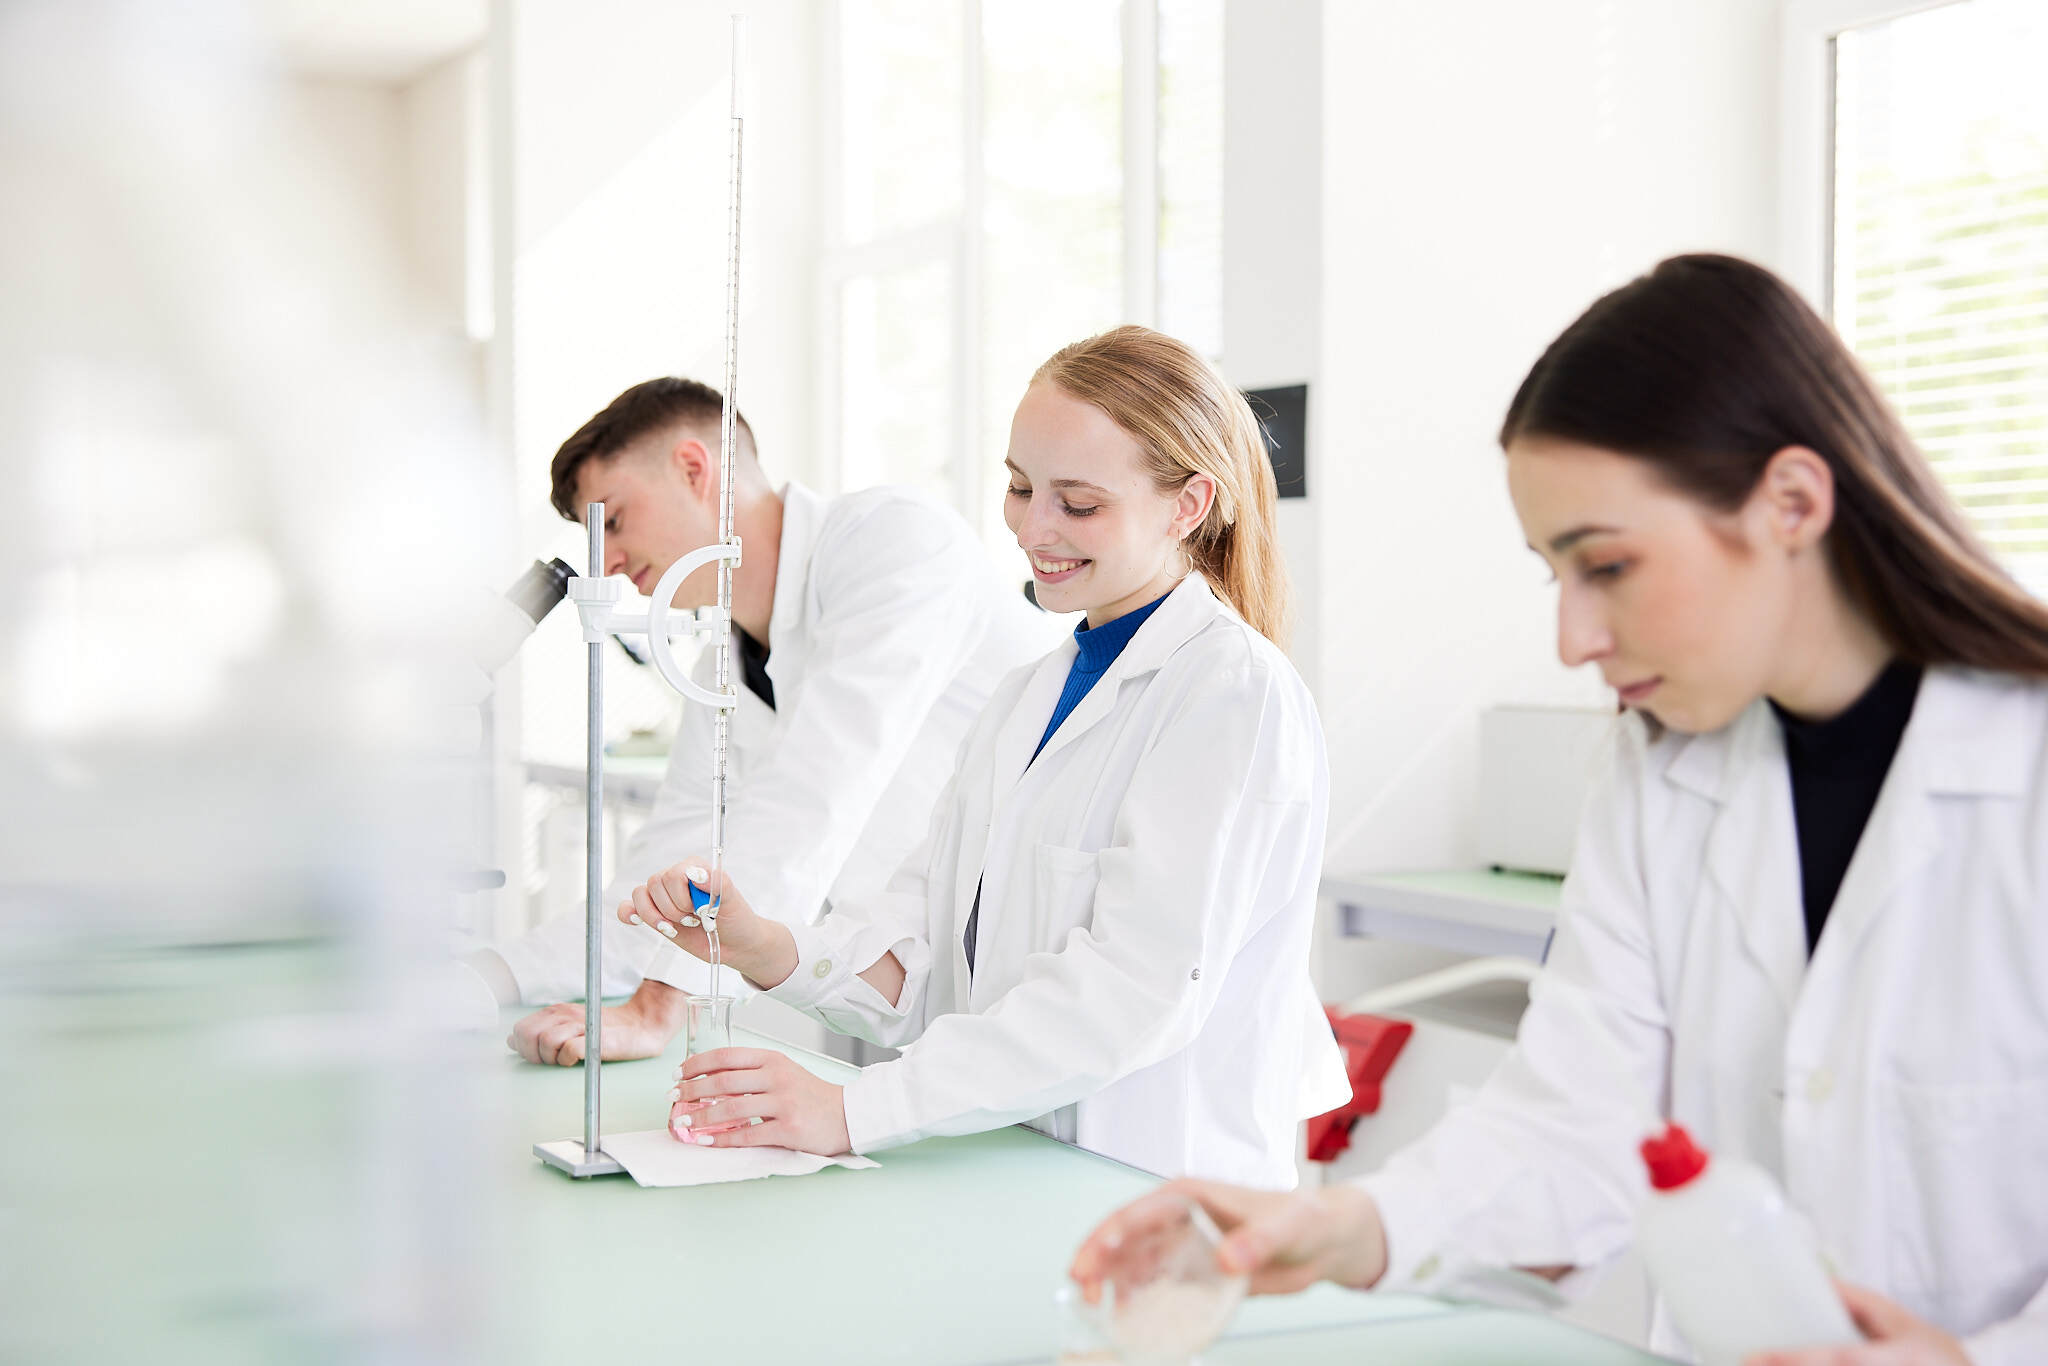 drei junge Studenten werden bei Versuchen in einem Labor gezeigt